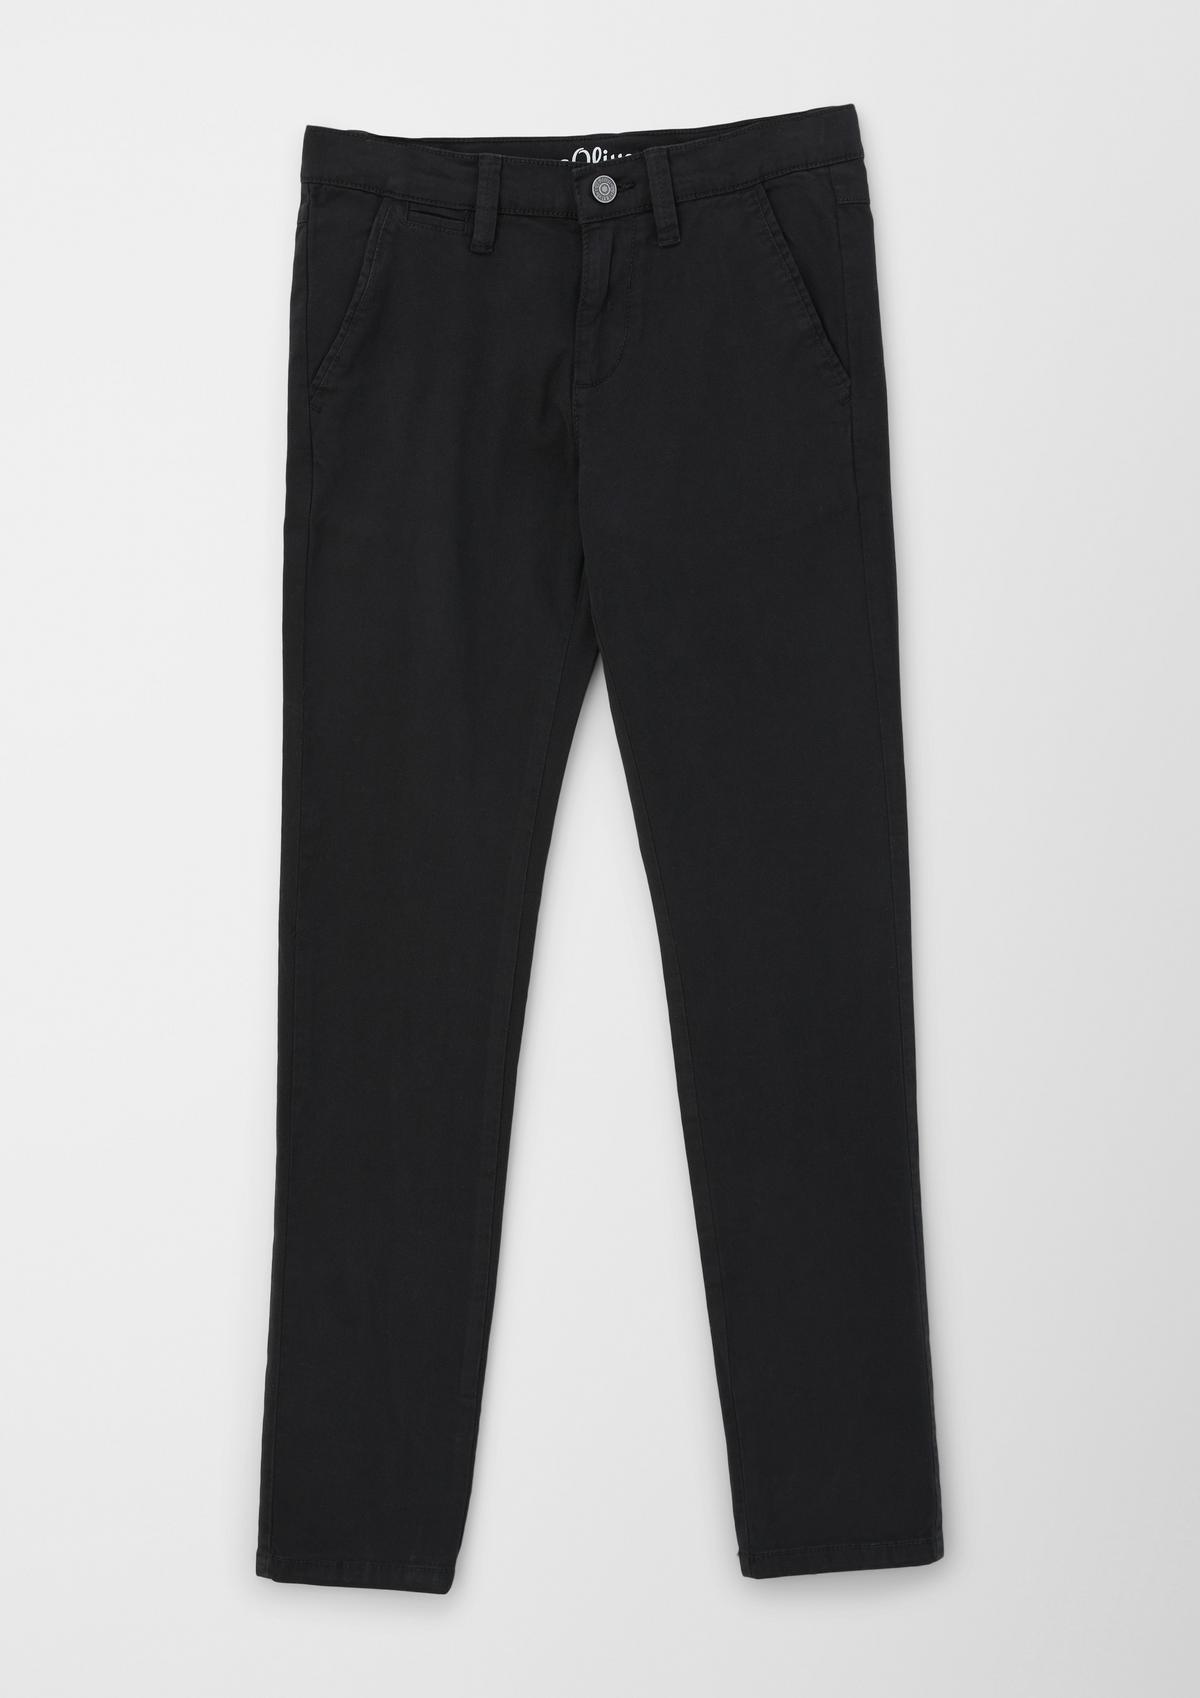 SlimFit Black Cotton Pants